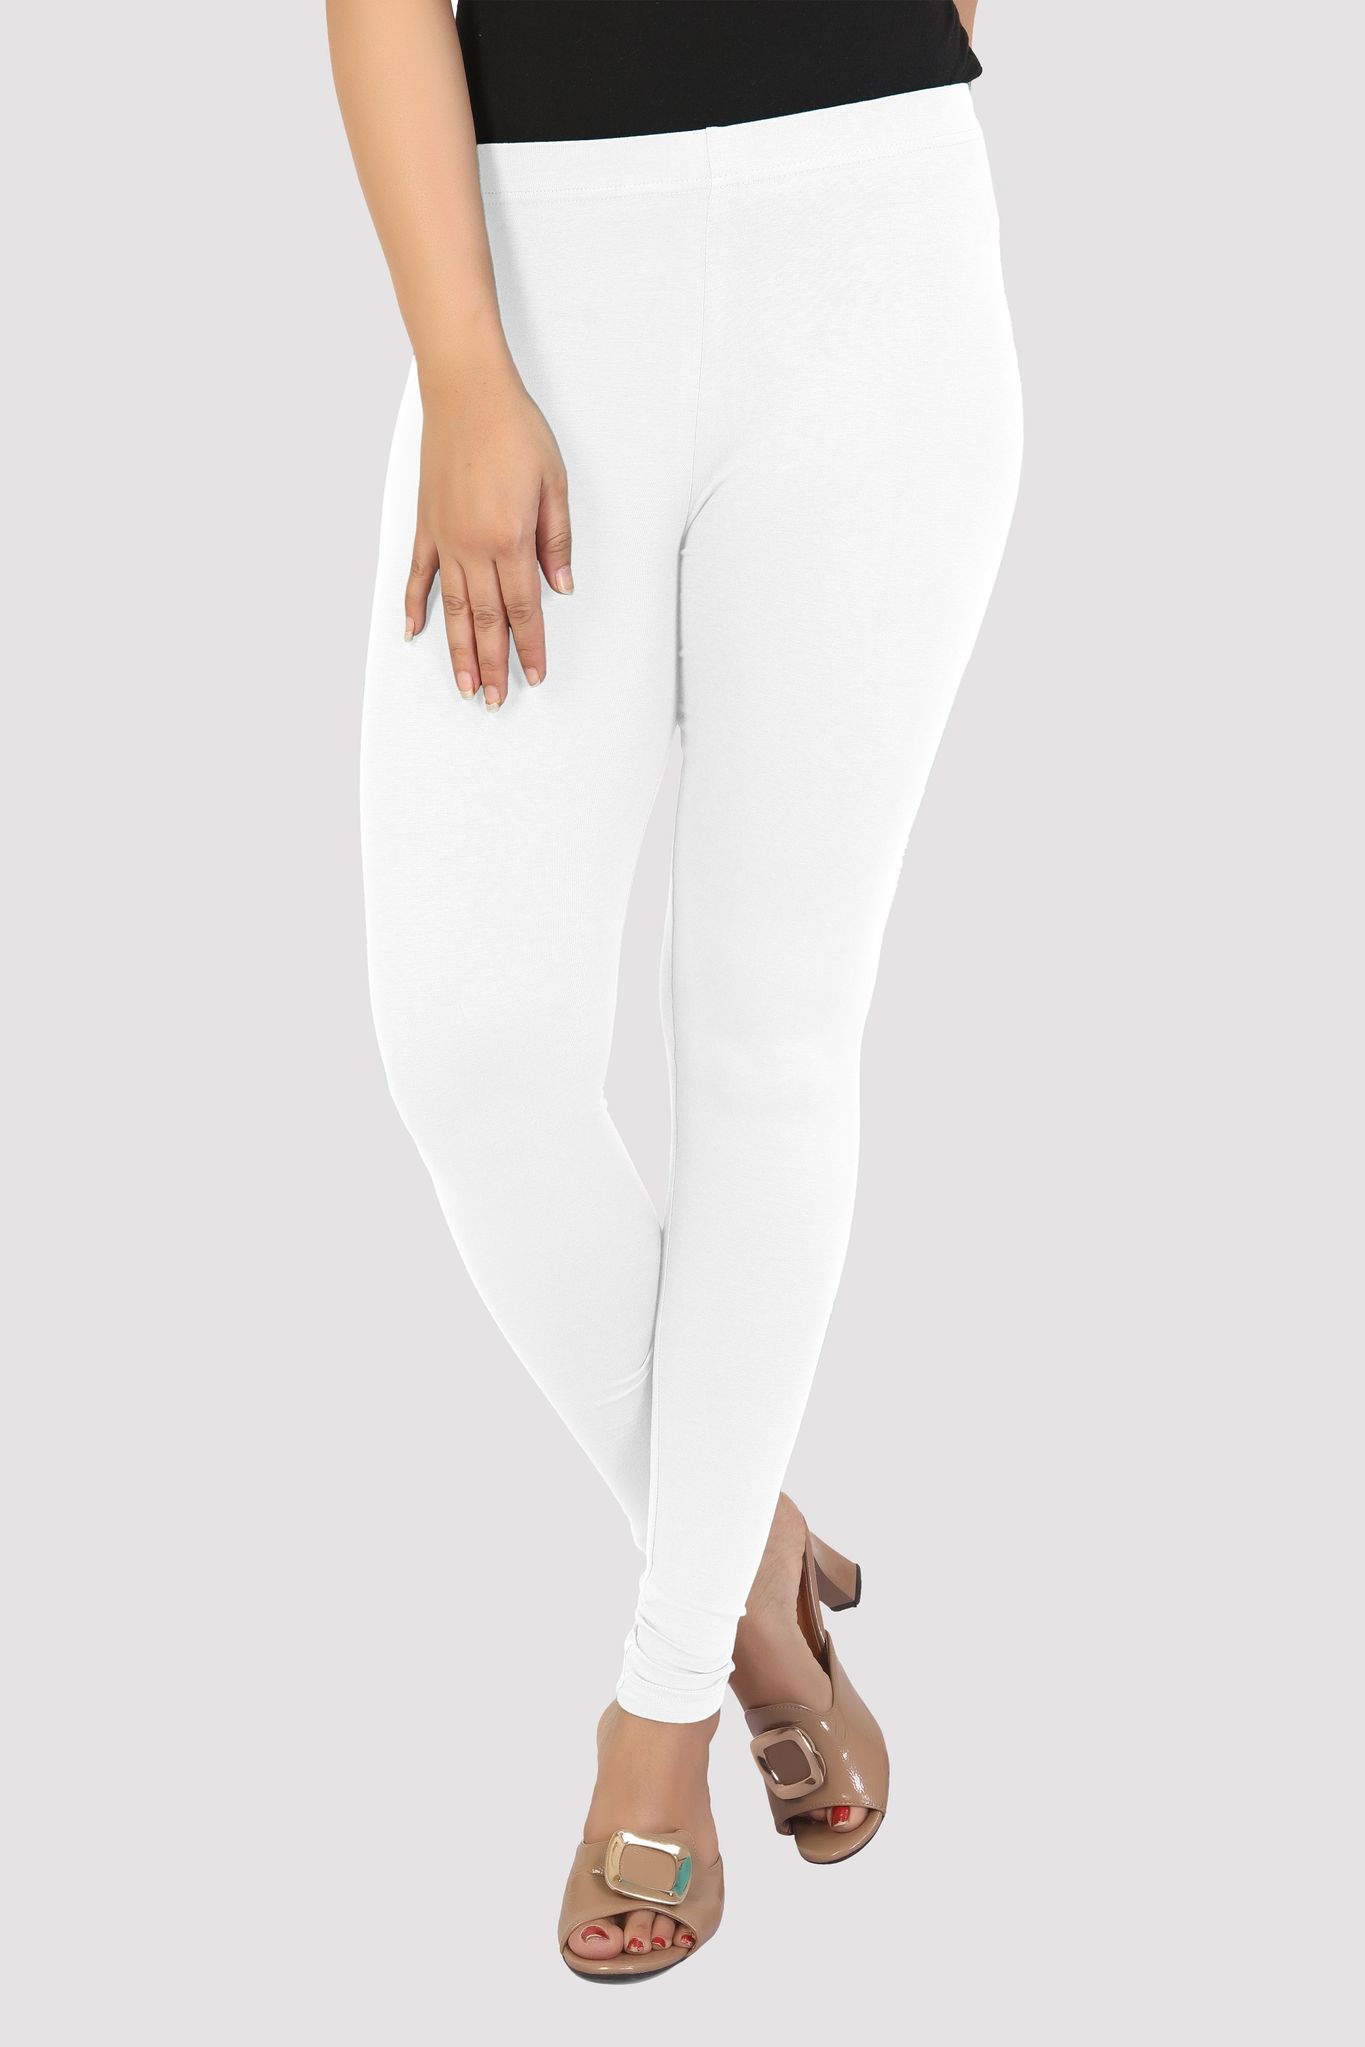 Women's White Cotton Lycra Ankle Length Leggings